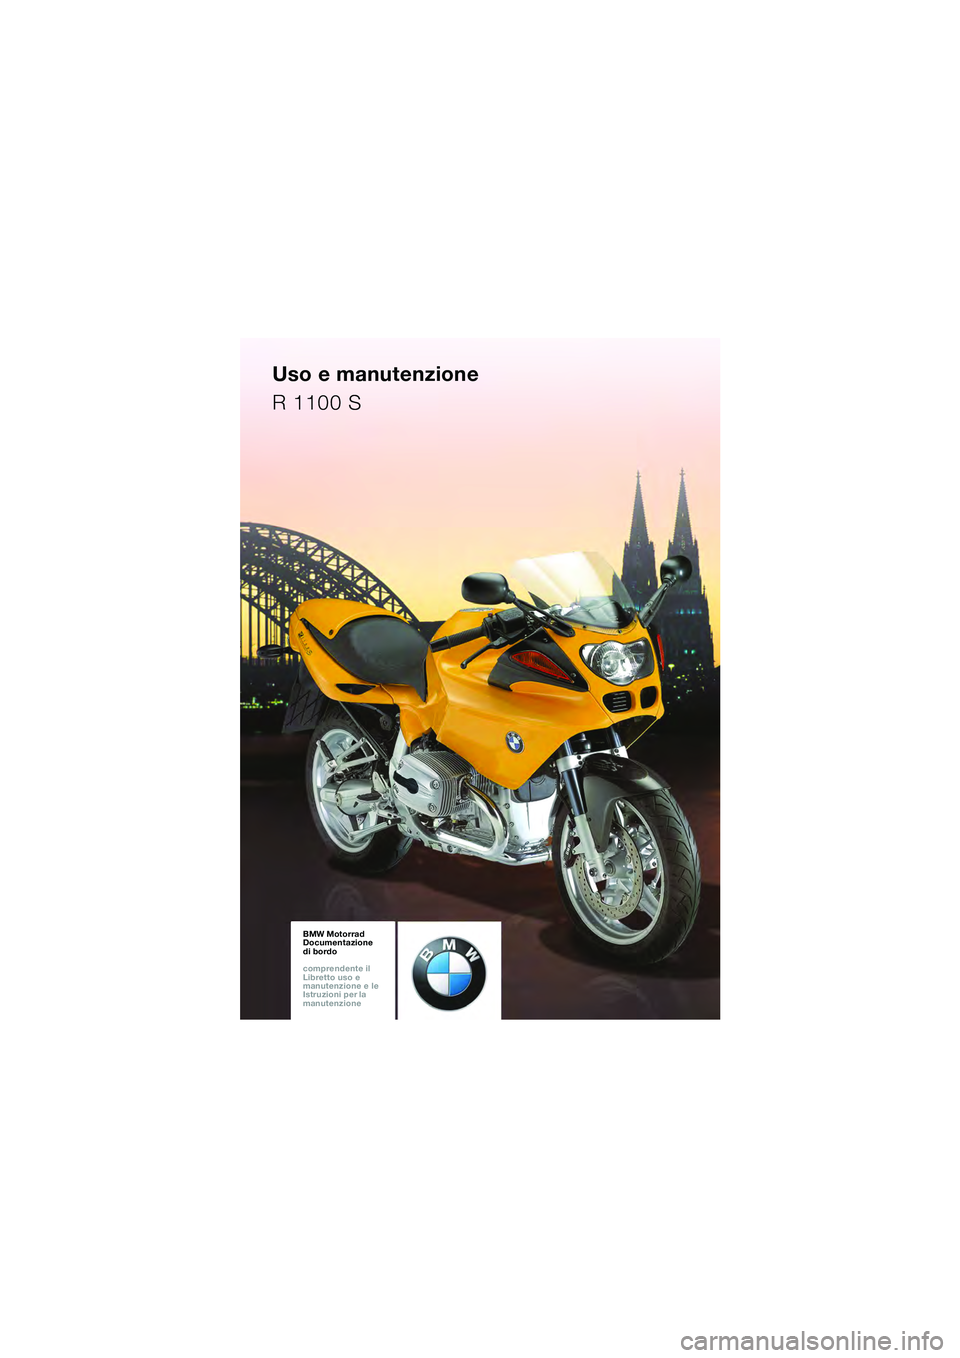 BMW MOTORRAD R 1100 S 2002  Libretto di uso e manutenzione (in Italian) BMW Motorrad
Documentazione  
di bordo
comprendente il  
Libretto uso e  
manutenzione e le  
Istruzioni per la  
manutenzioneBMW Motorrad
Documentazione  
di bordo
comprendente il  
Libretto uso e  
